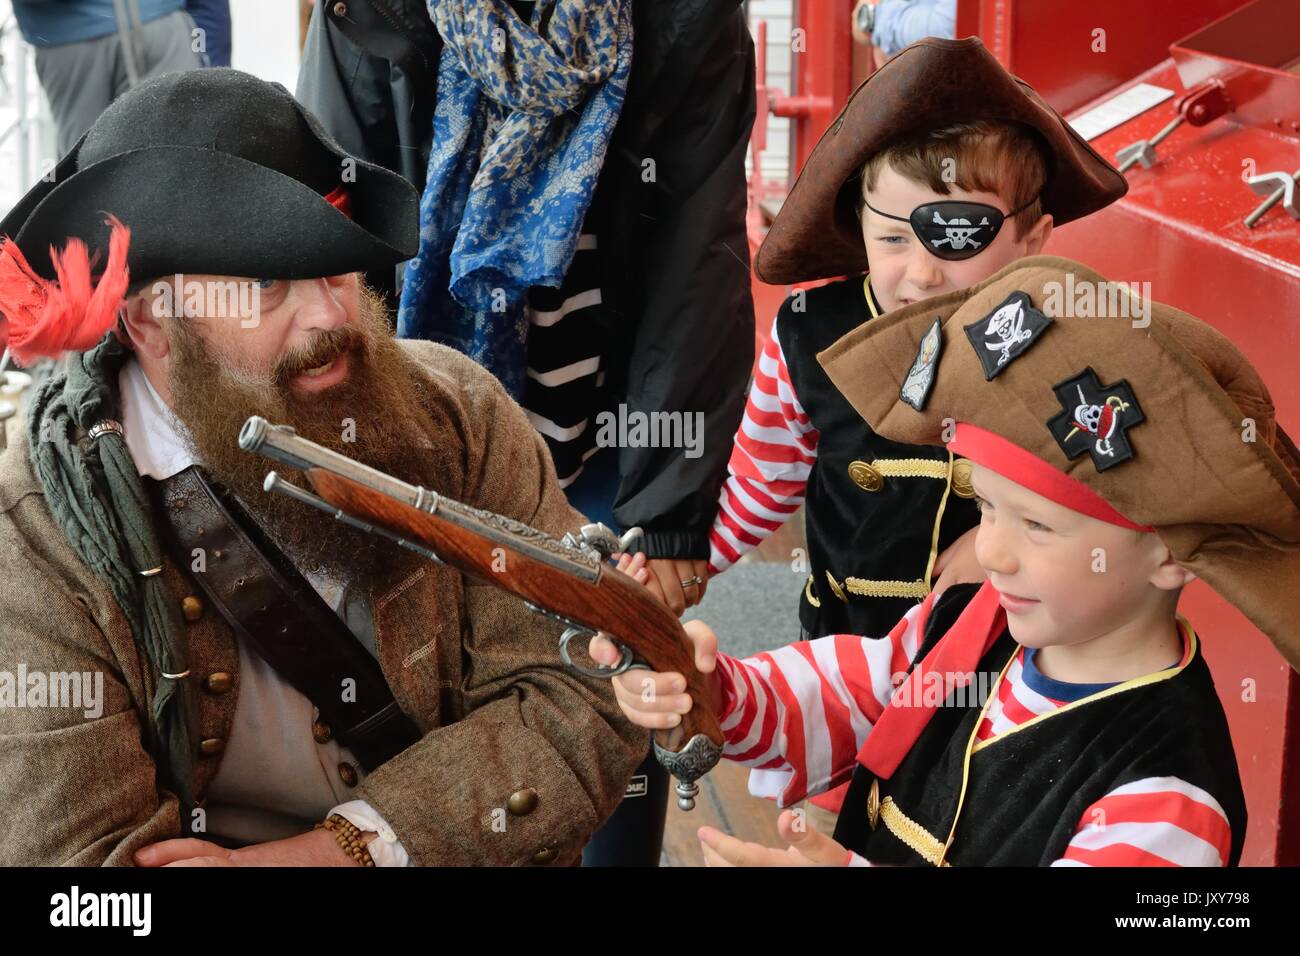 Kinder verkleiden sich als Piraten für eine Reise an Bord einer Yacht in Schottland, Großbritannien Stockfoto